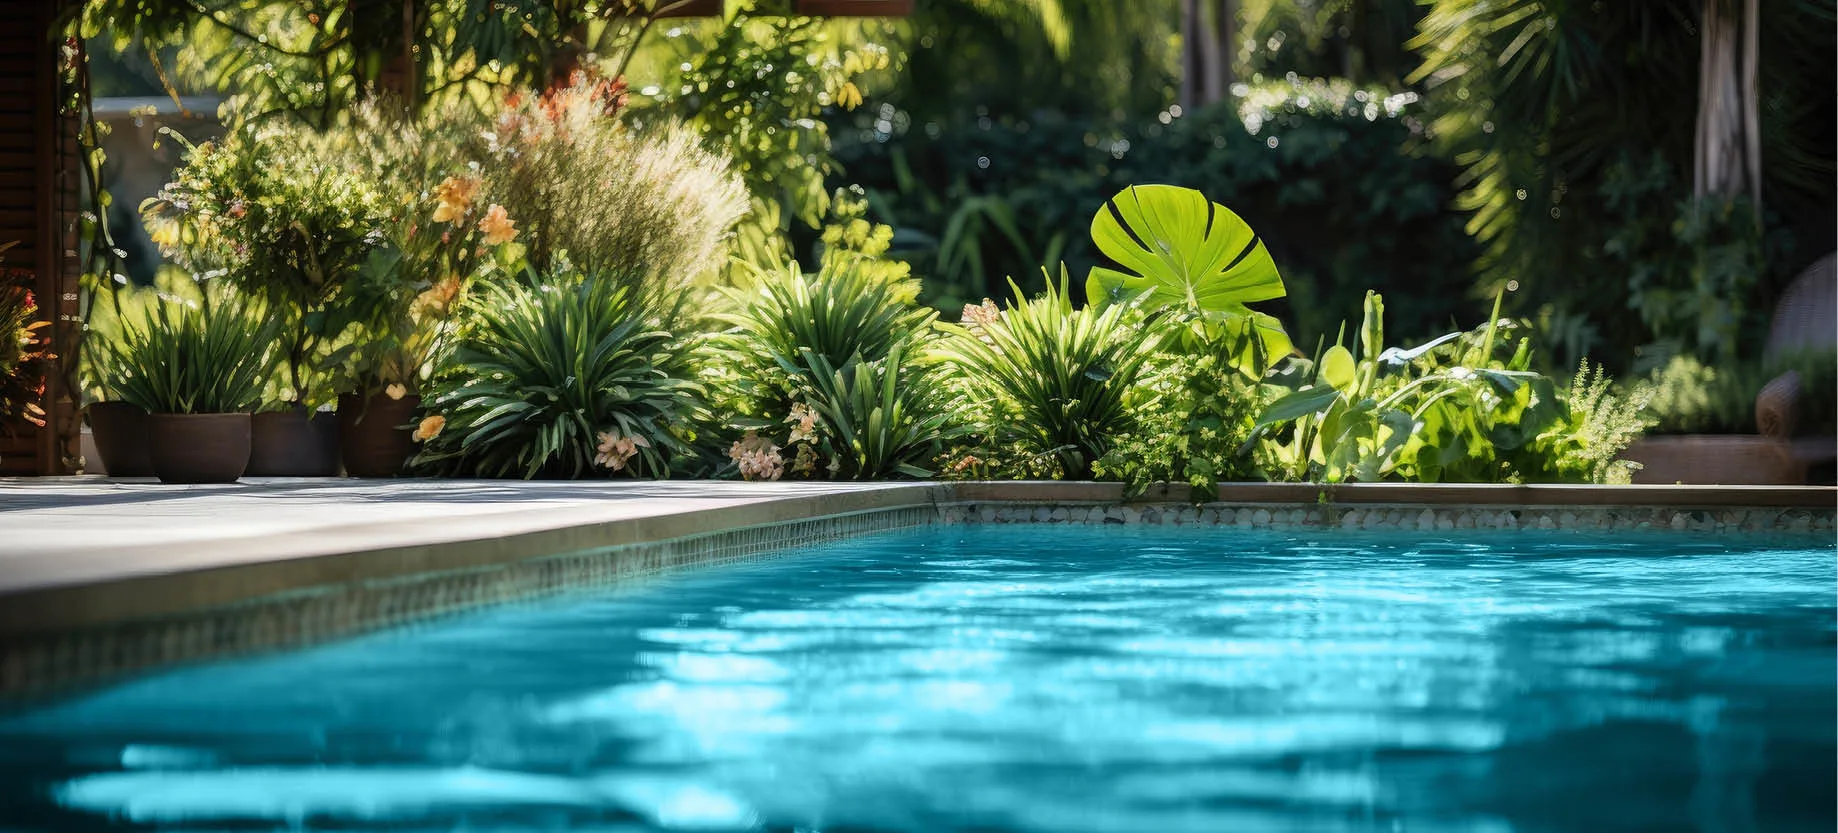 choose non invasive plants around the pool